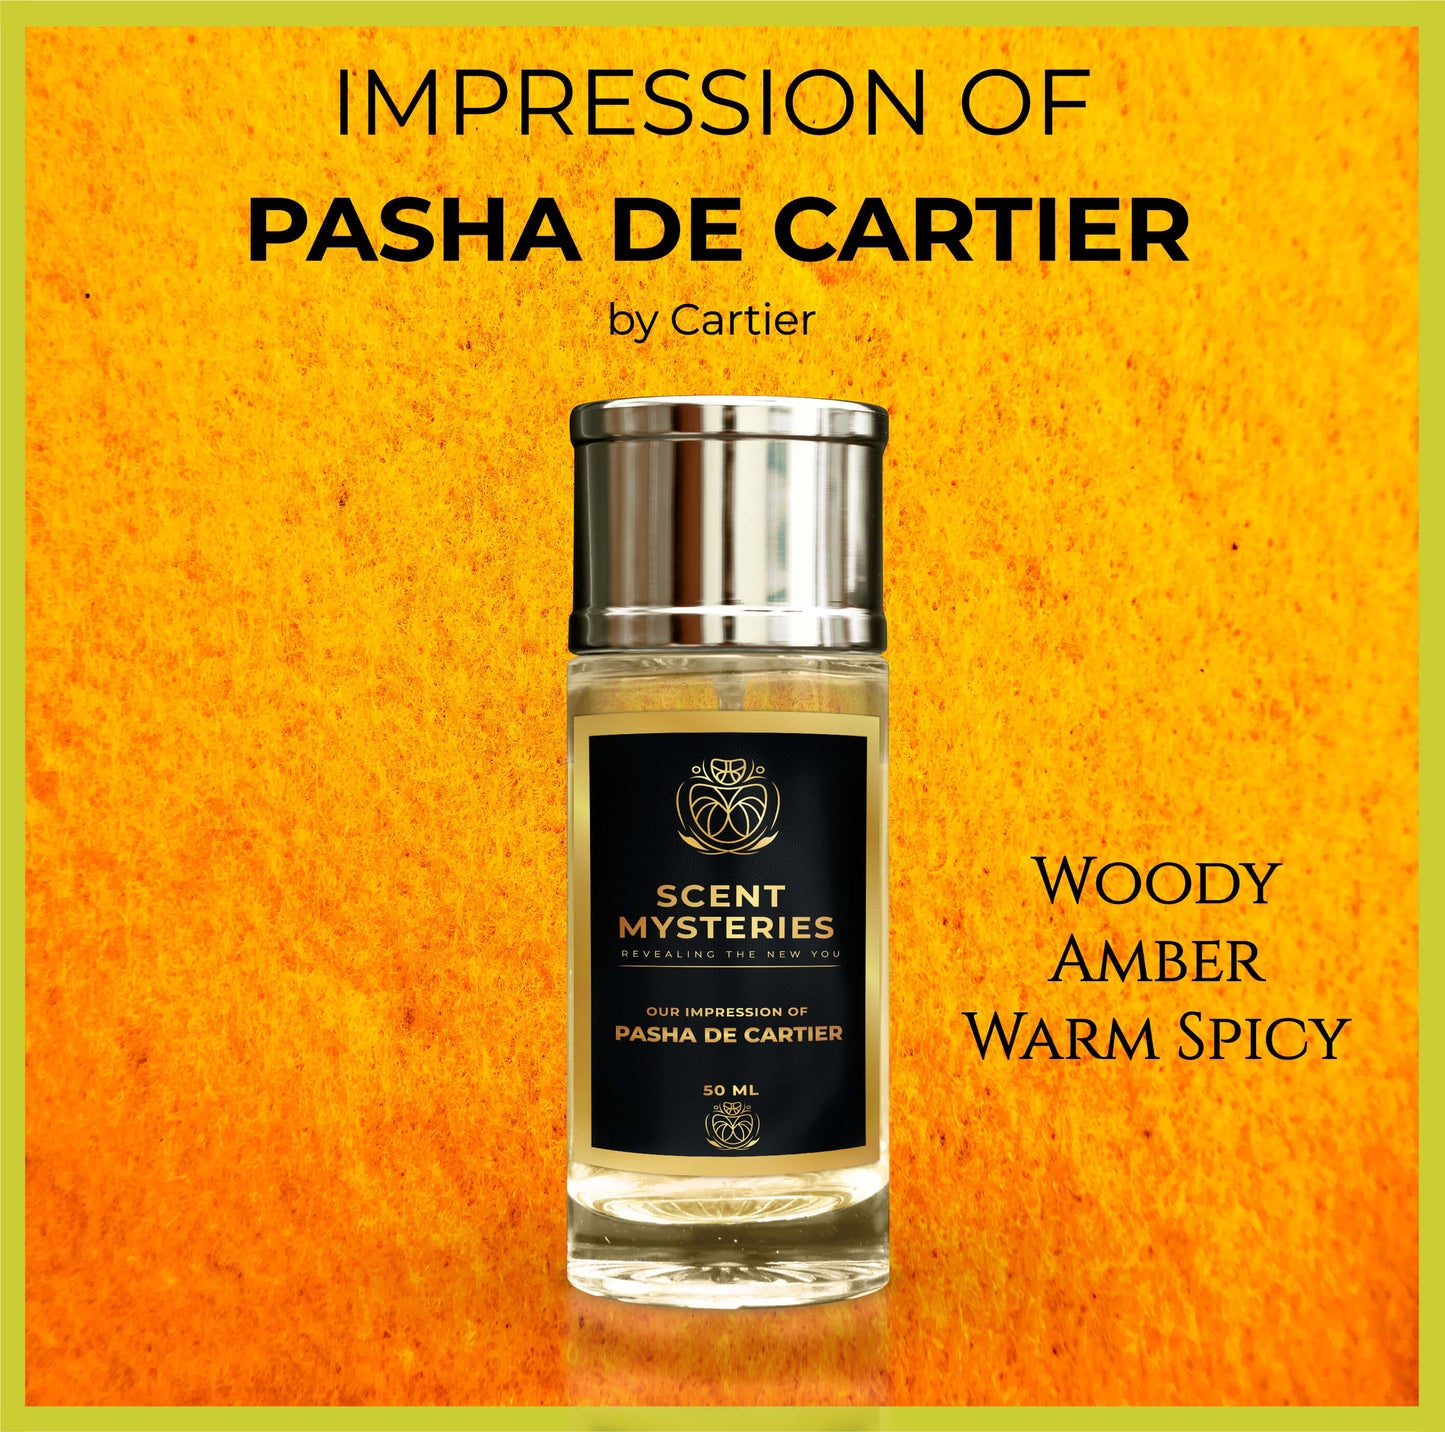 Impression of Pasha de Cartier